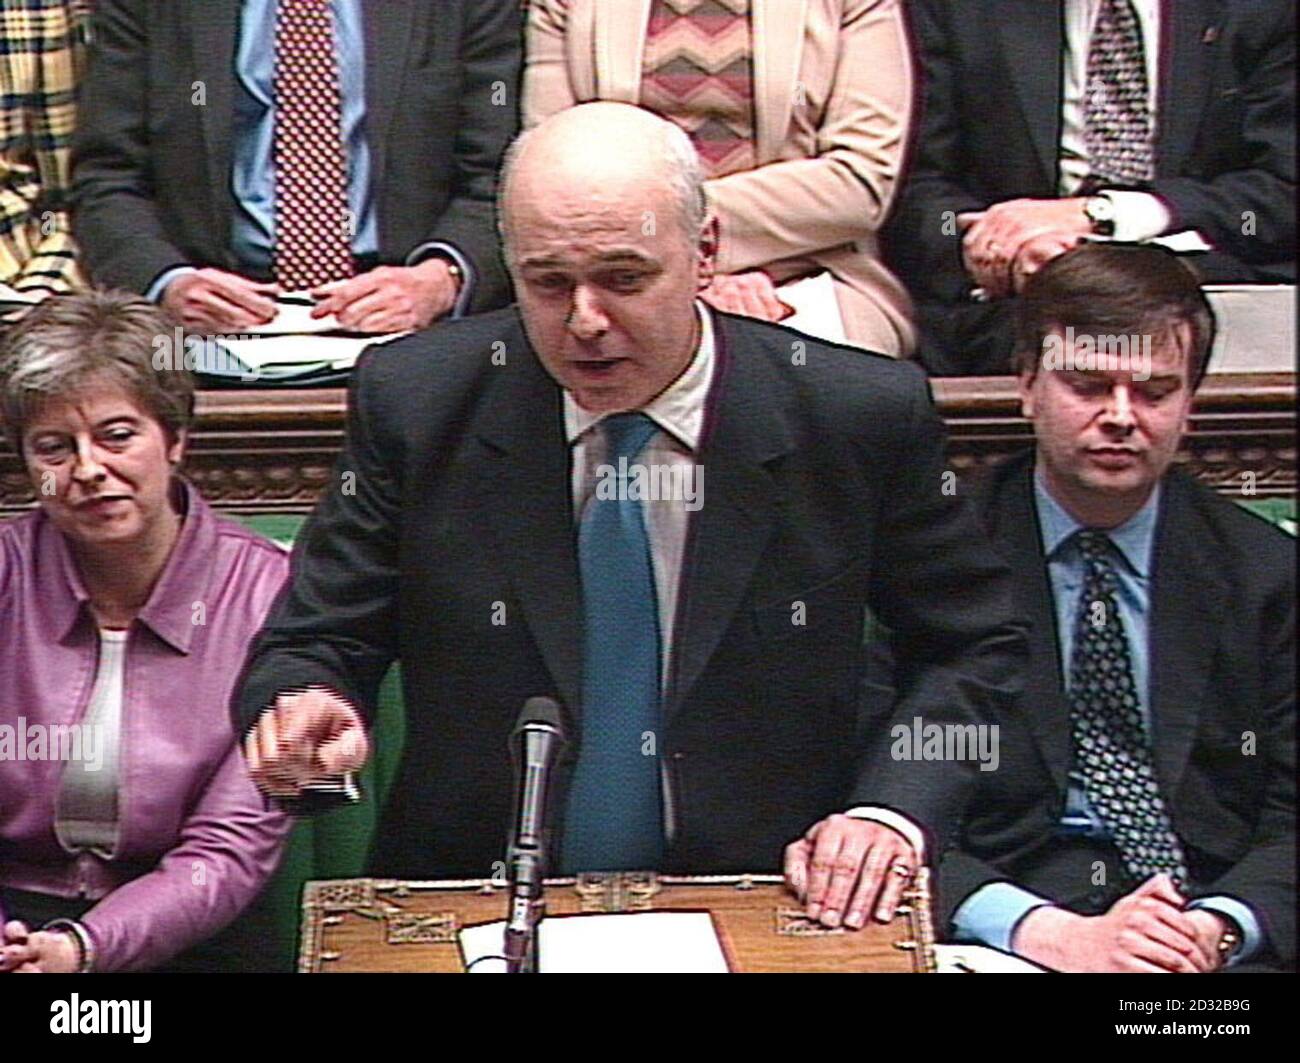 El líder conservador Ian Duncan Smith hace una pregunta al ministro Tony Blair en la Cámara de los comunes durante el turno de preguntas parlamentarias semanal regular para el PM. Fue la primera desde que los diputados regresaron de sus vacaciones de Navidad. Foto de stock